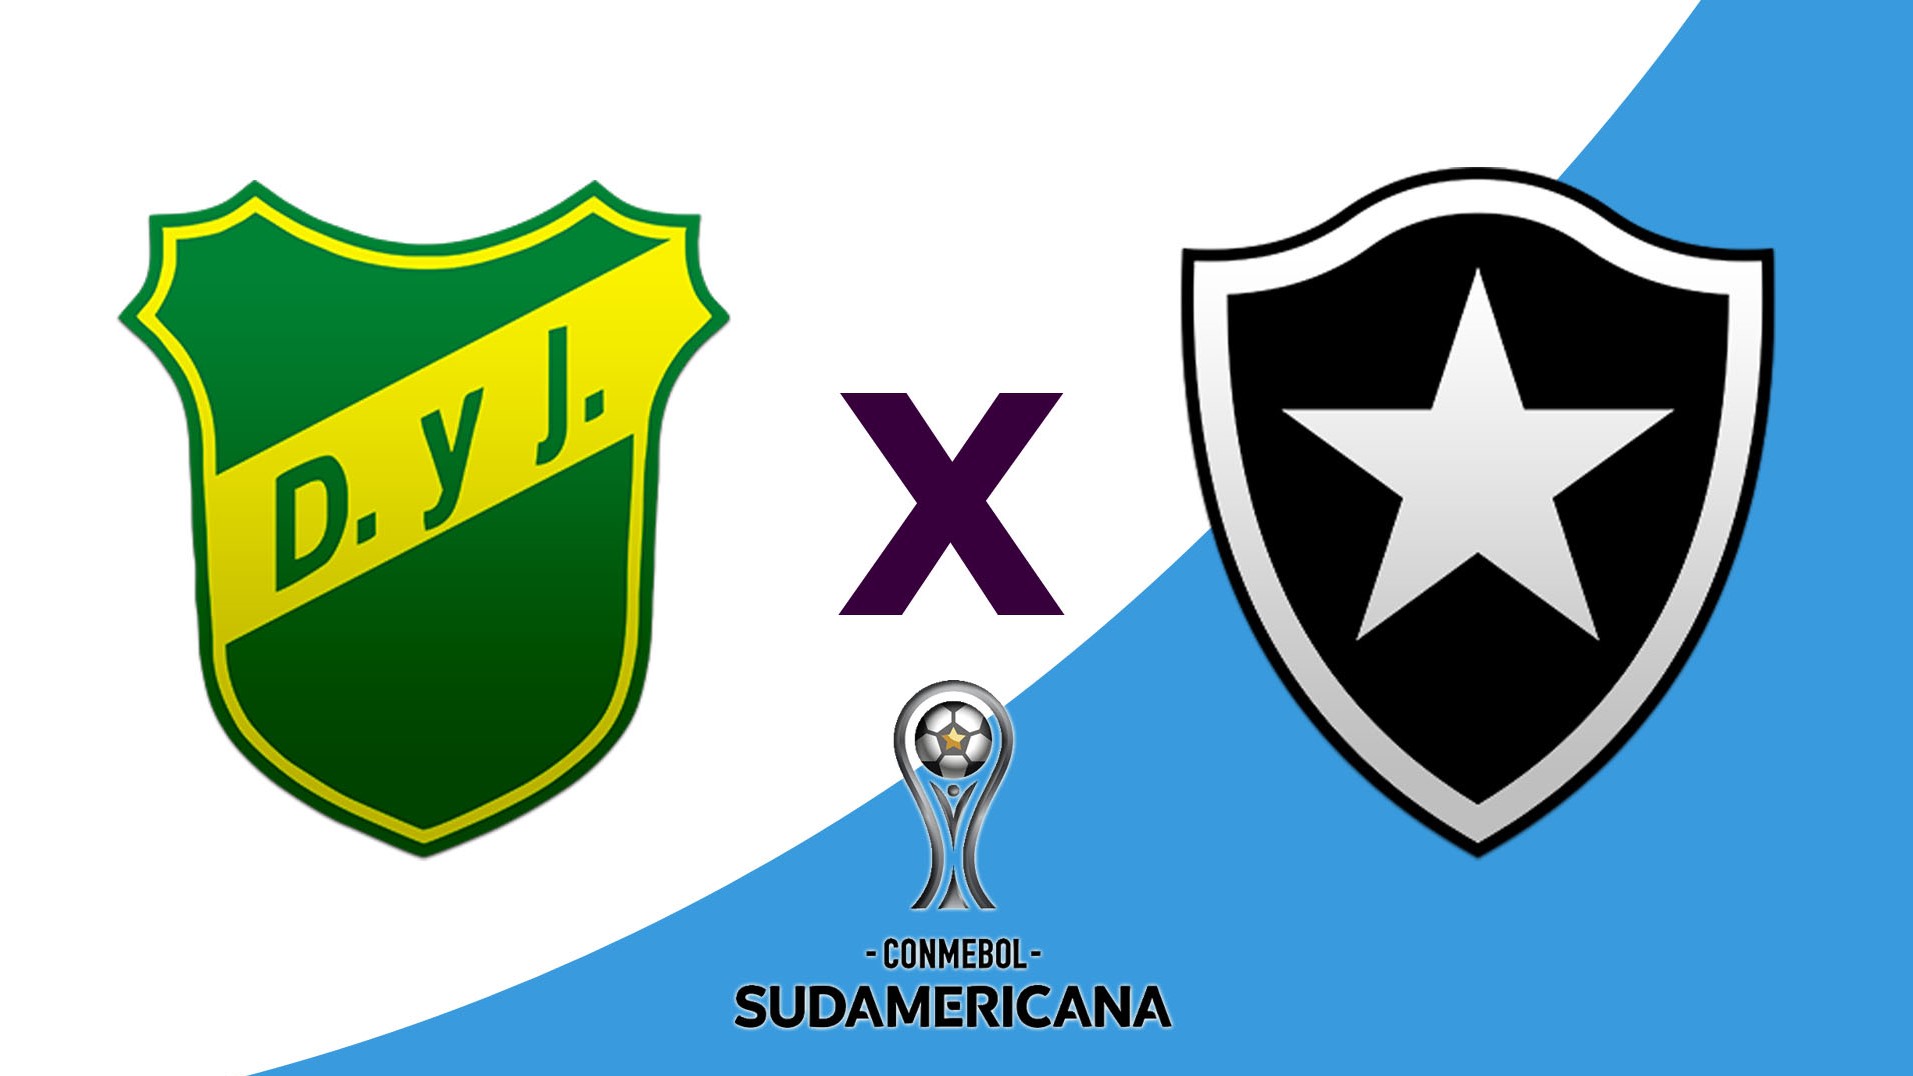 Redetv! transmite mais uma partida da Copa Sul-Americana com total exclusividade na TV aberta